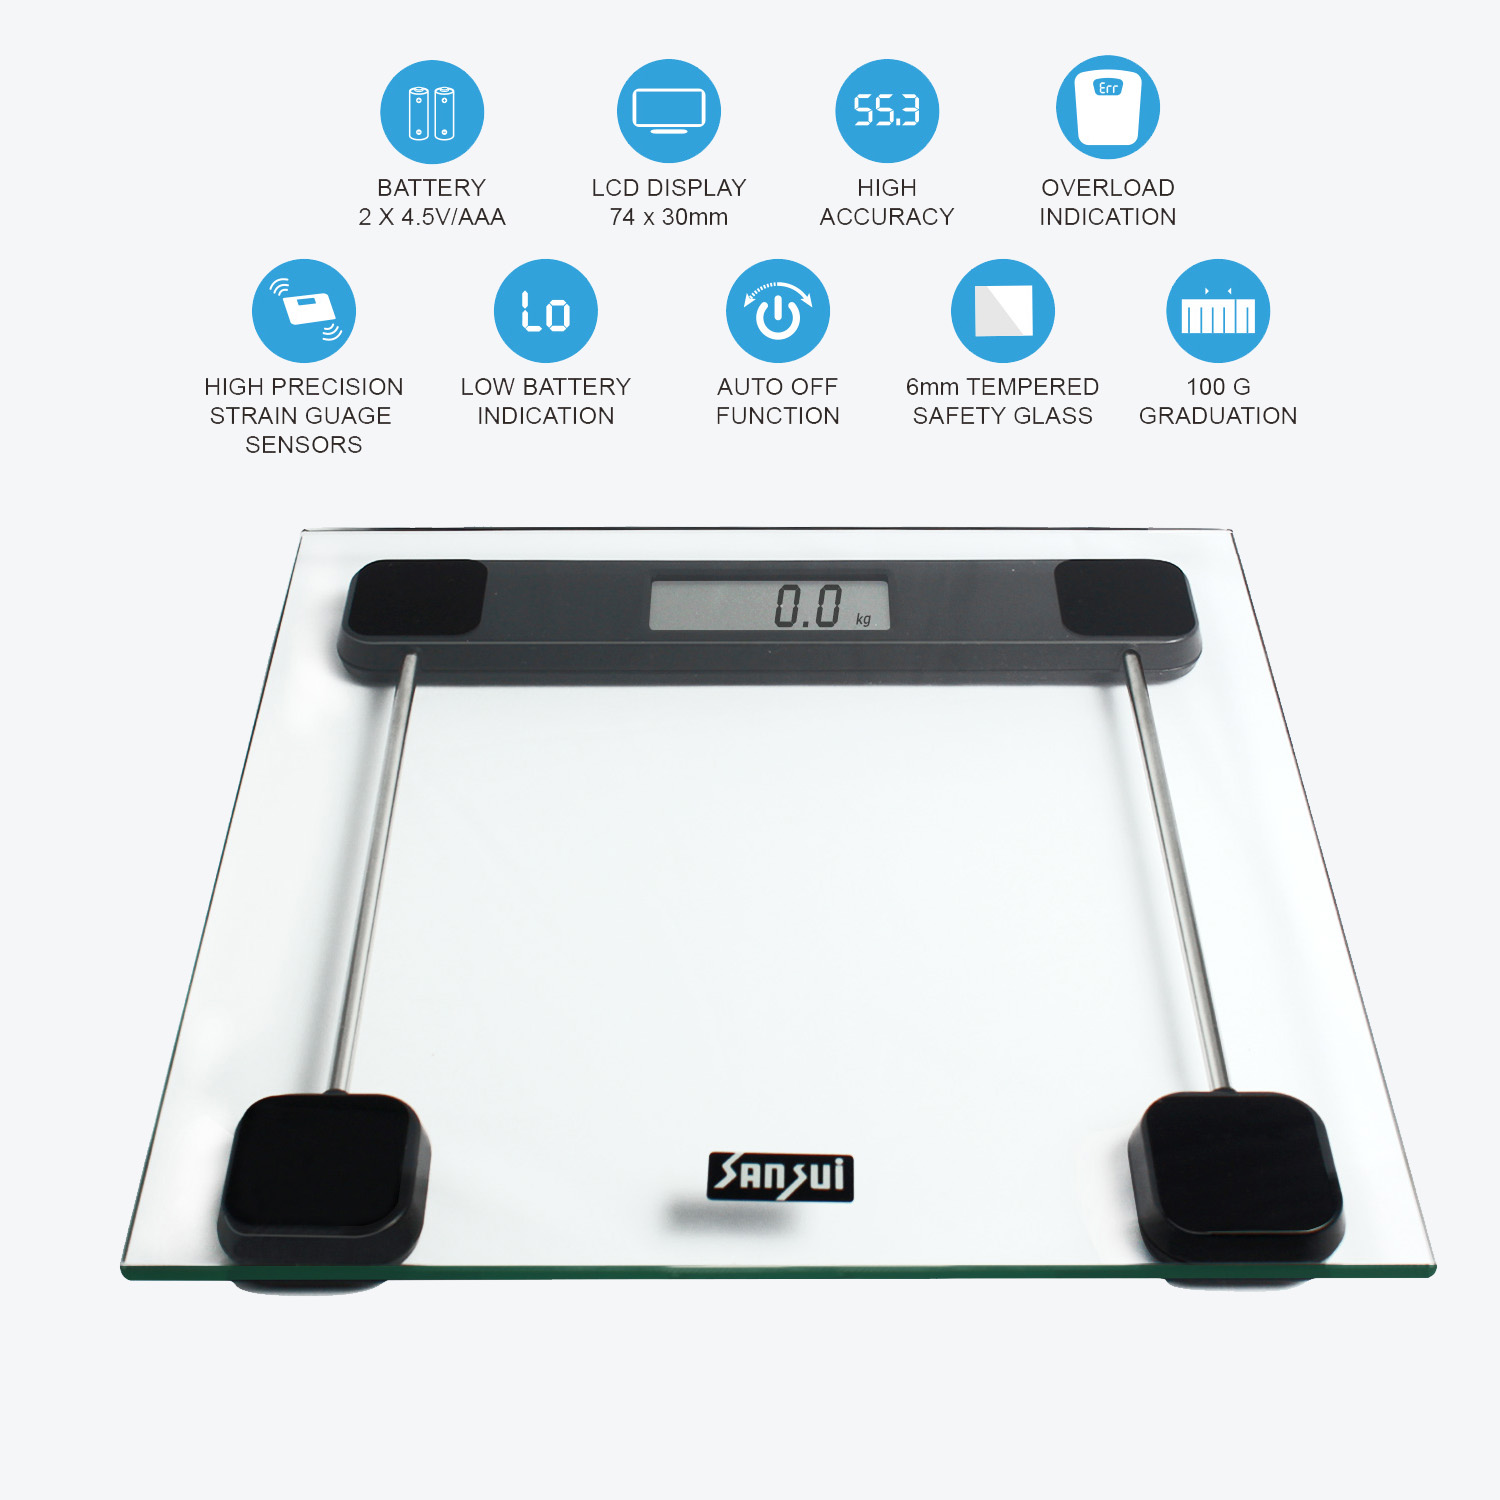 Sansui Personal Scale Transparent